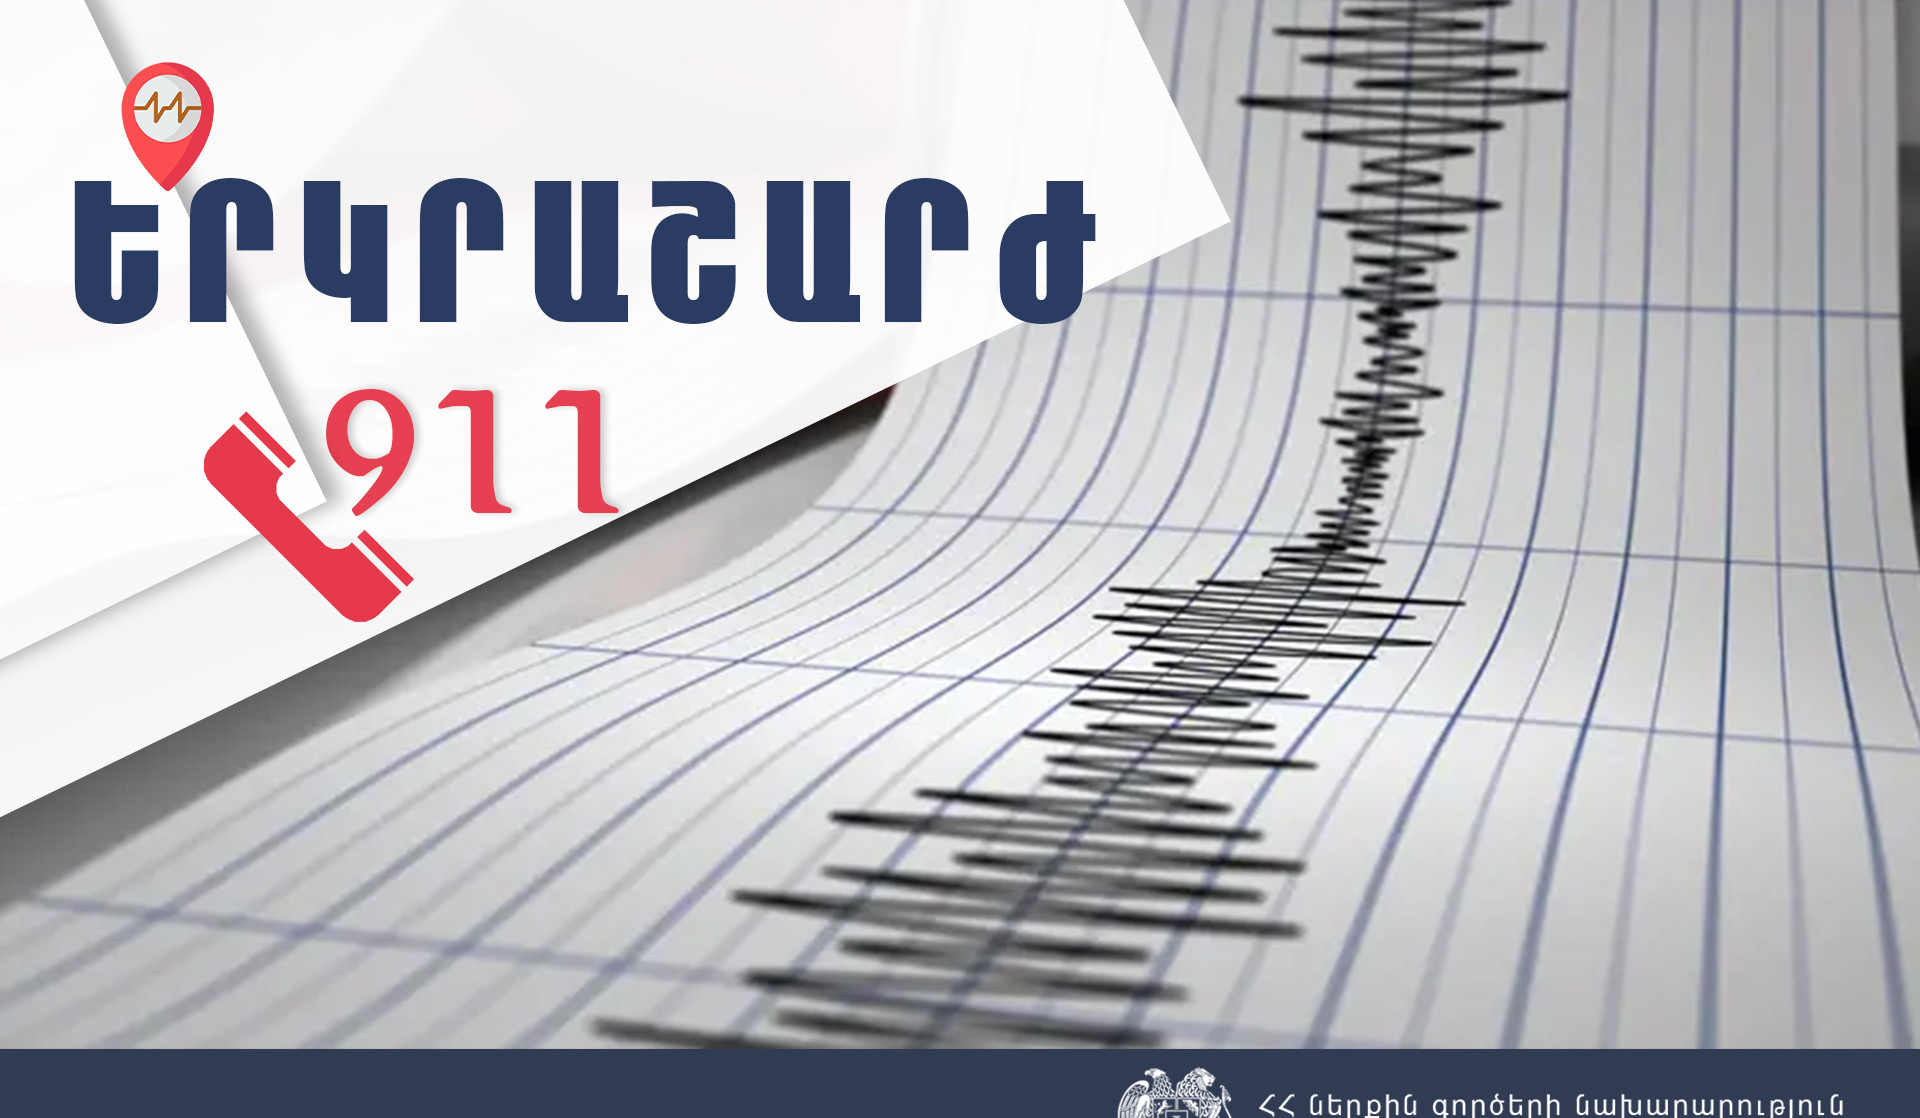 Երկրաշարժ Վրաստանի Գուրջանի քաղաքից 36 կմ հարավ-արևելք. այն զգացվել է նաև Հայաստանում